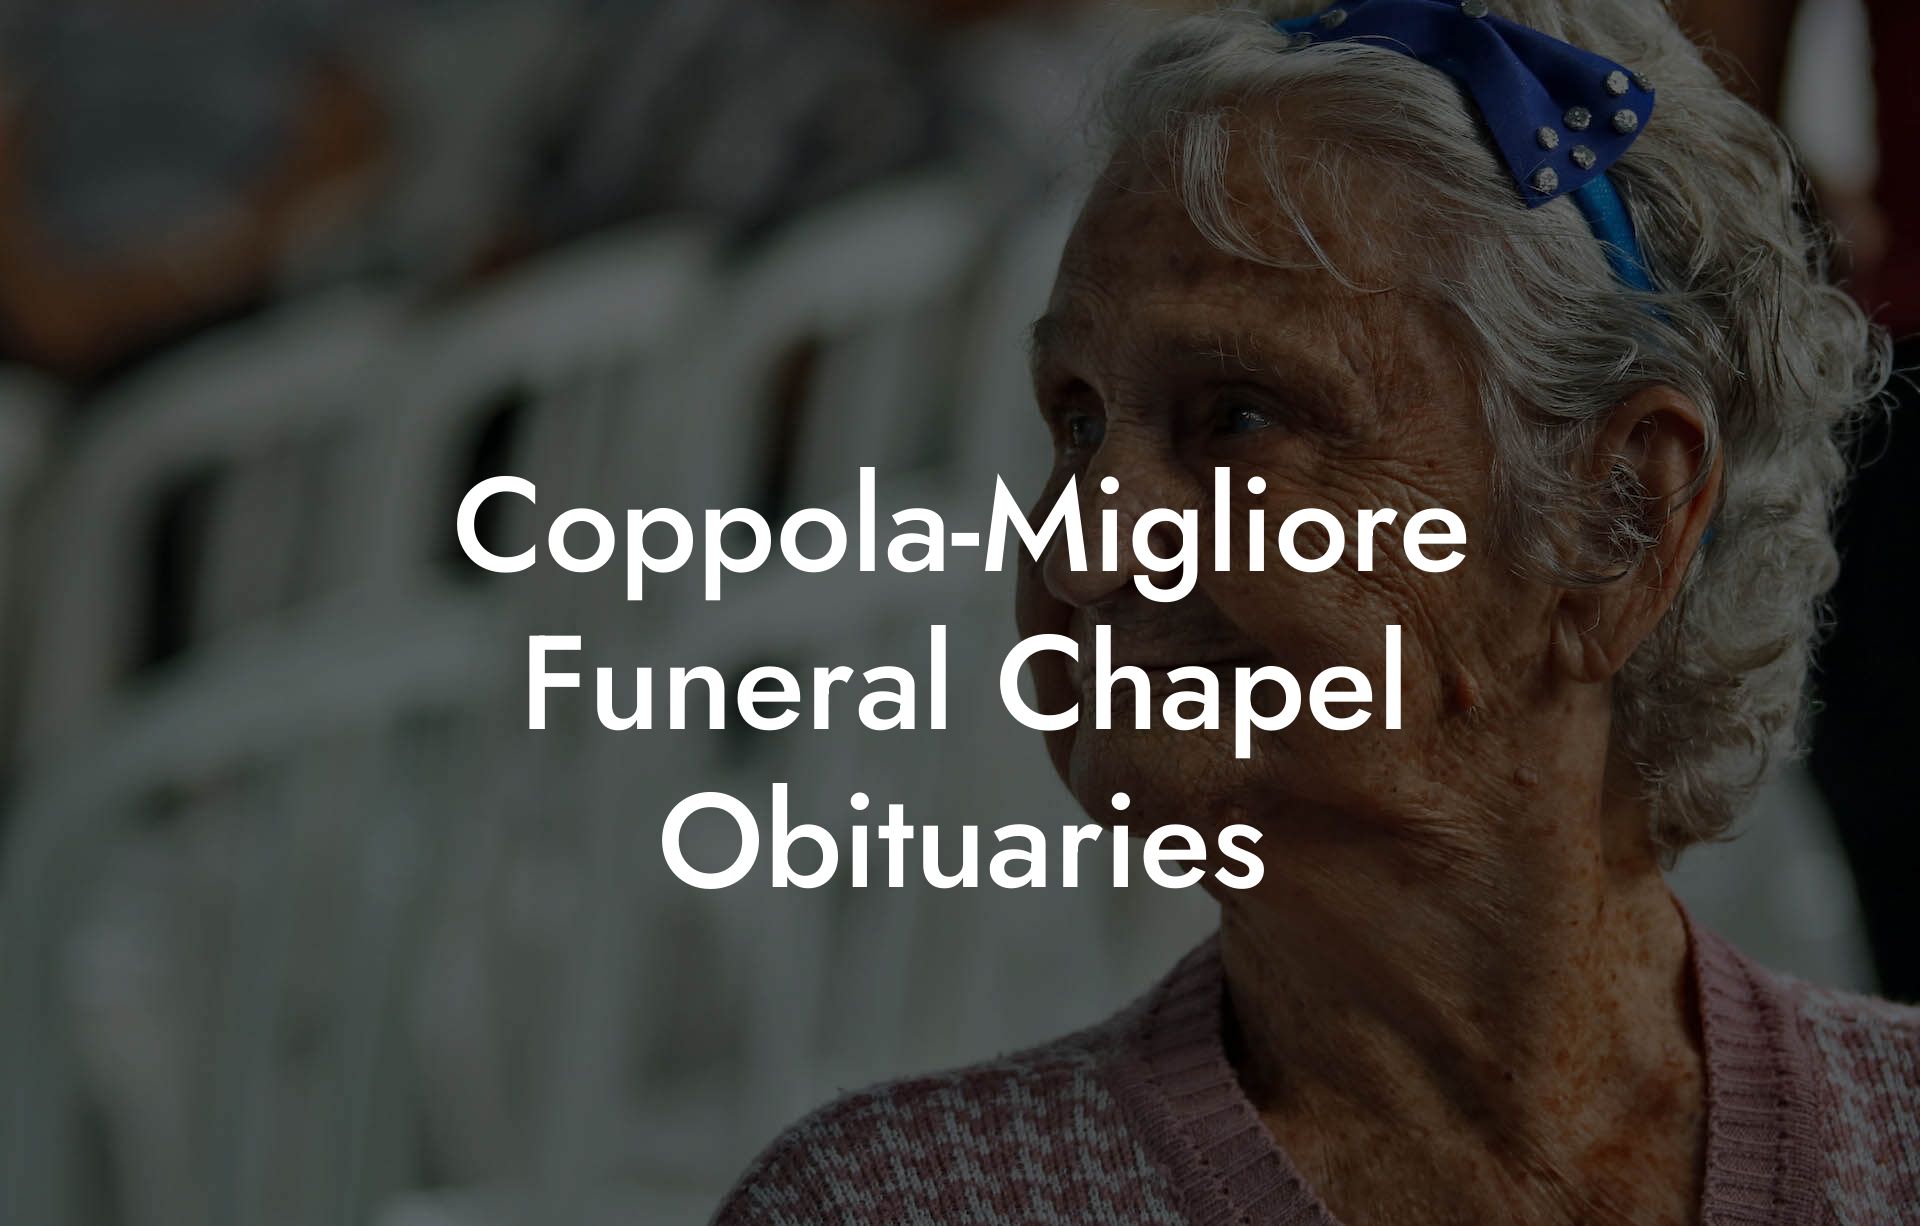 Coppola-Migliore Funeral Chapel Obituaries